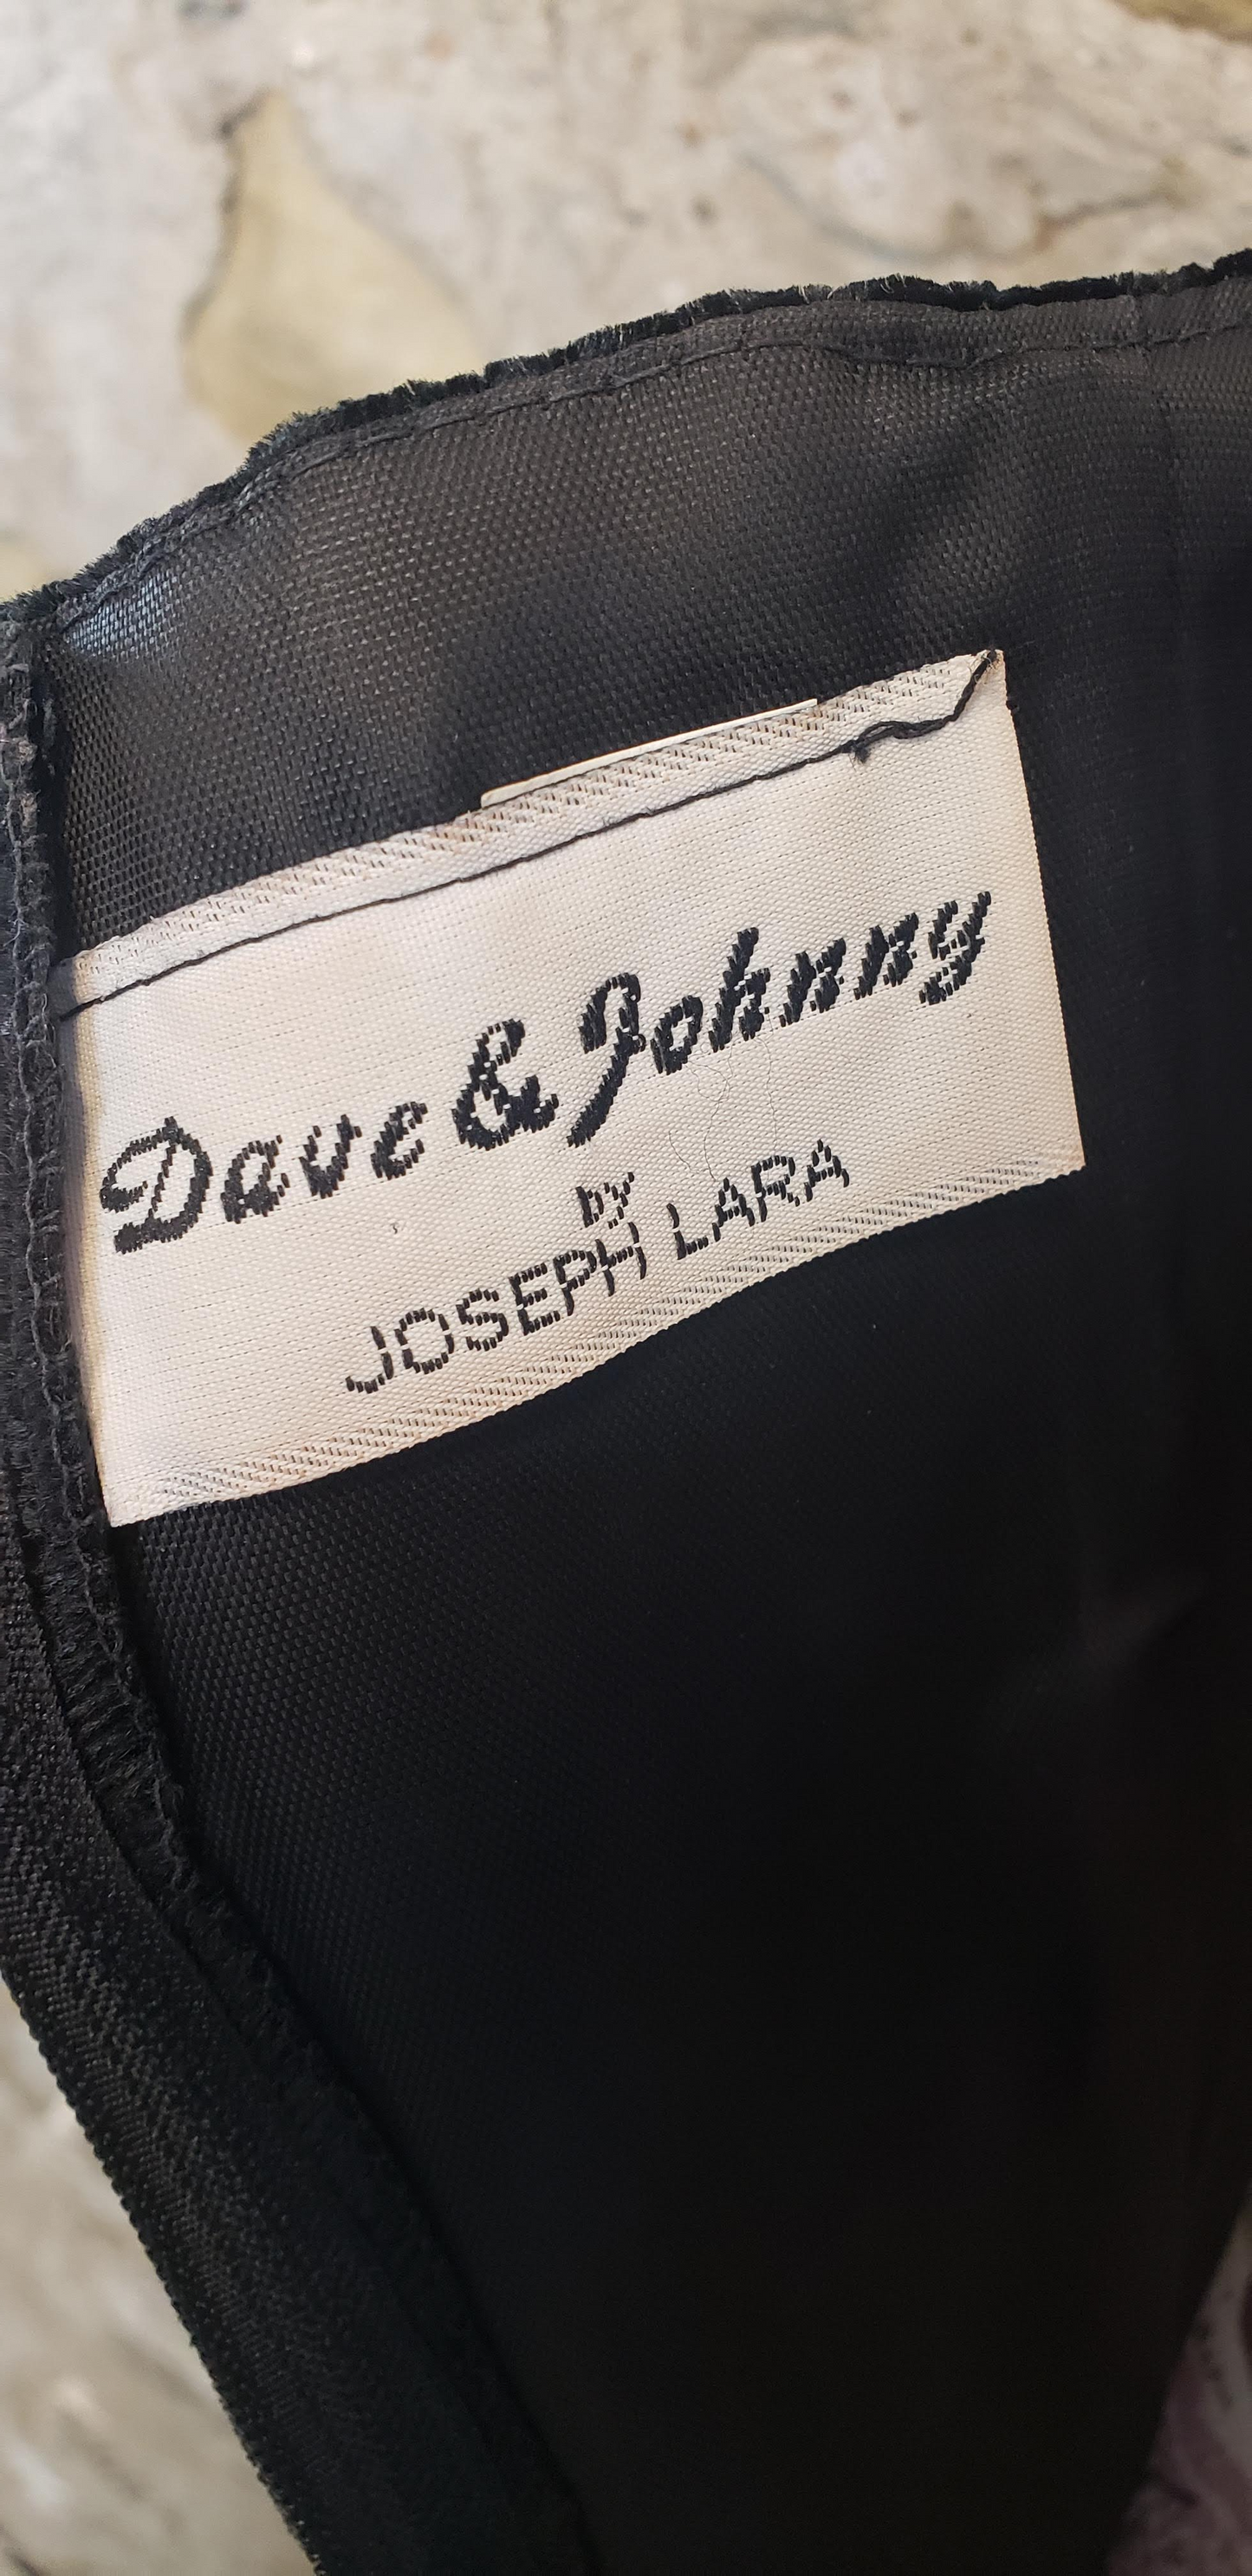 Rare 80's Dave & Johnny Black Evening Dress Sz 10